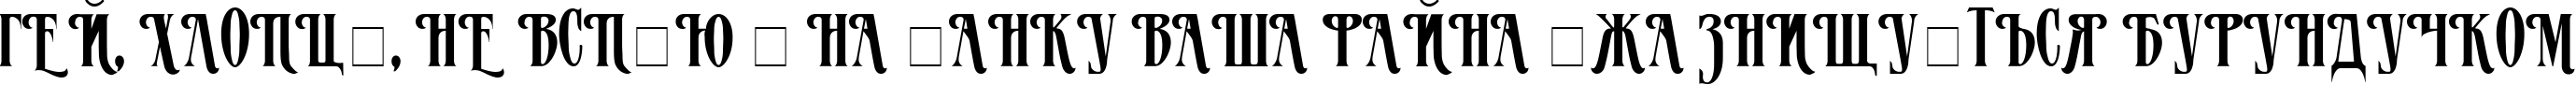 Пример написания шрифтом MazamaPlain Light текста на украинском